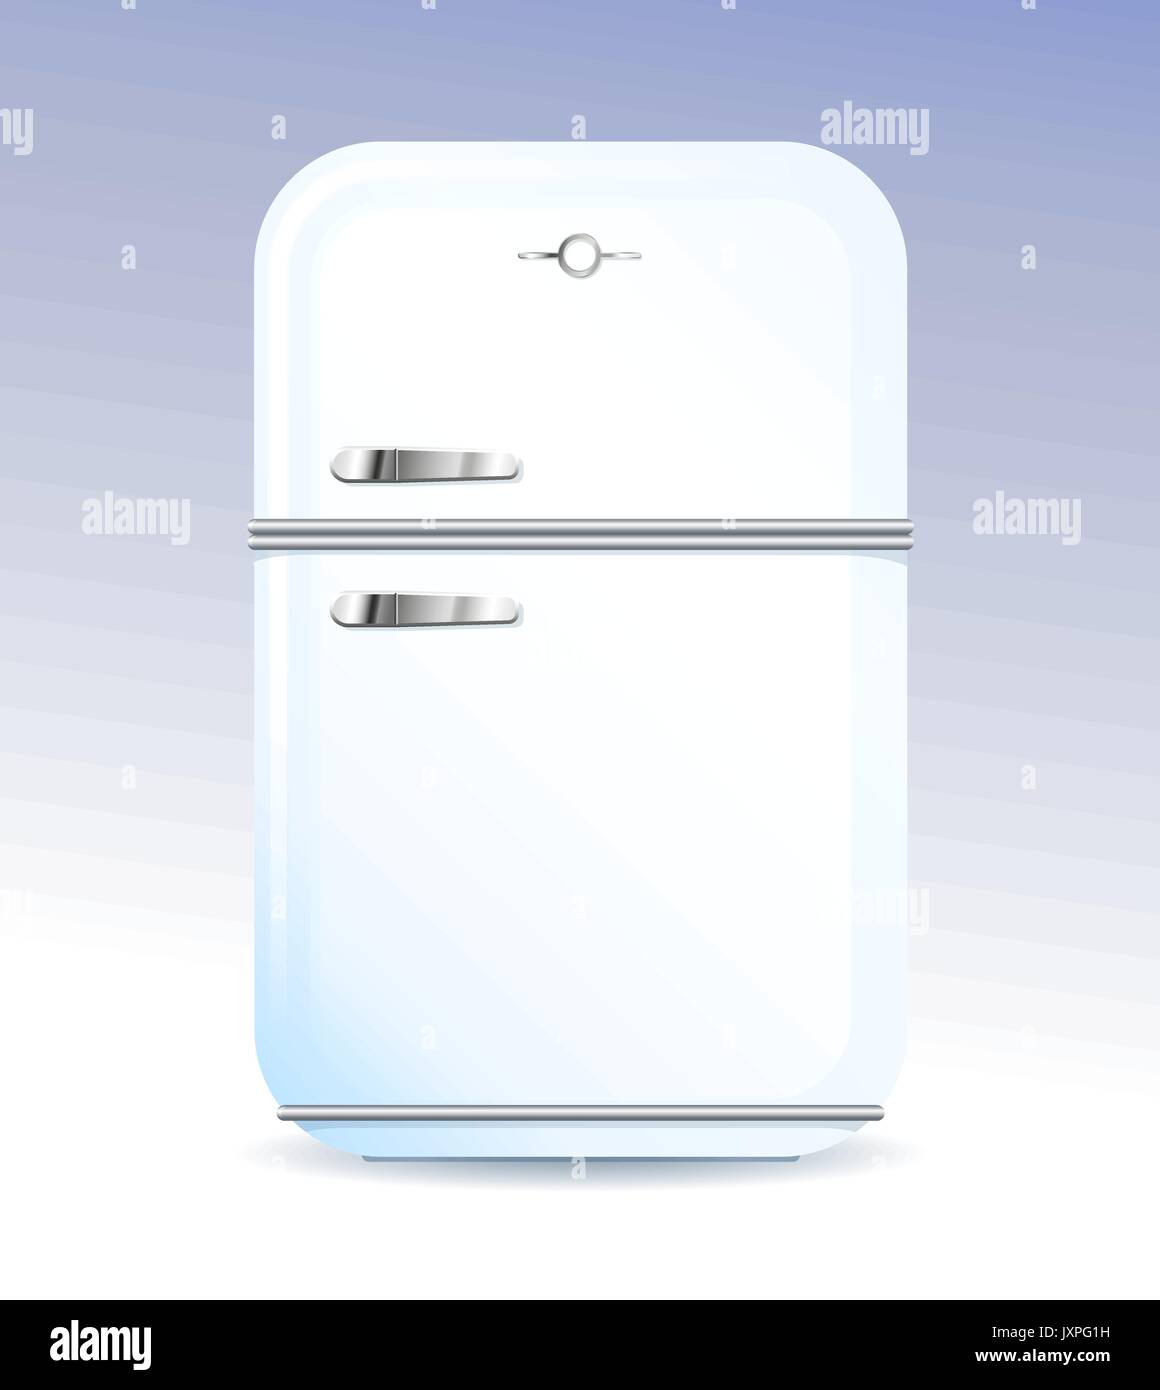 Retro fridge freezer immagini e fotografie stock ad alta risoluzione - Alamy